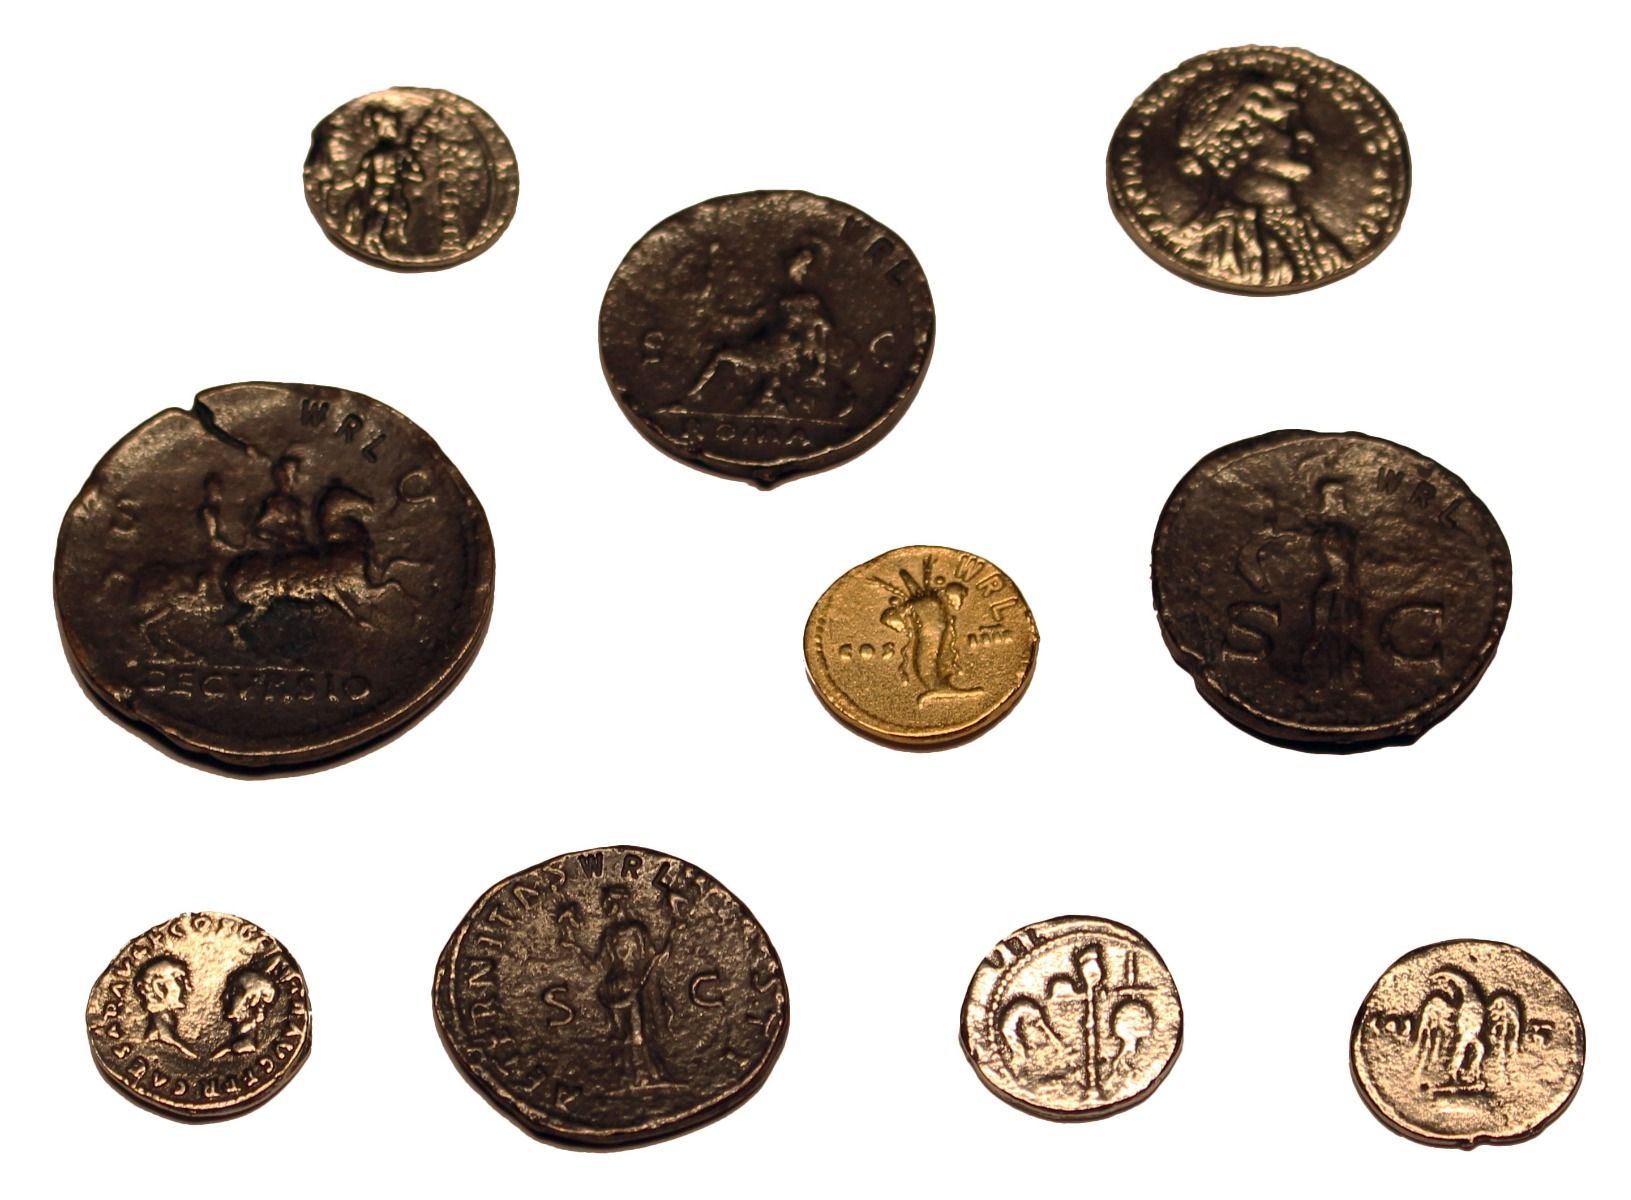 10 pièces de monnaie romaines - réplique